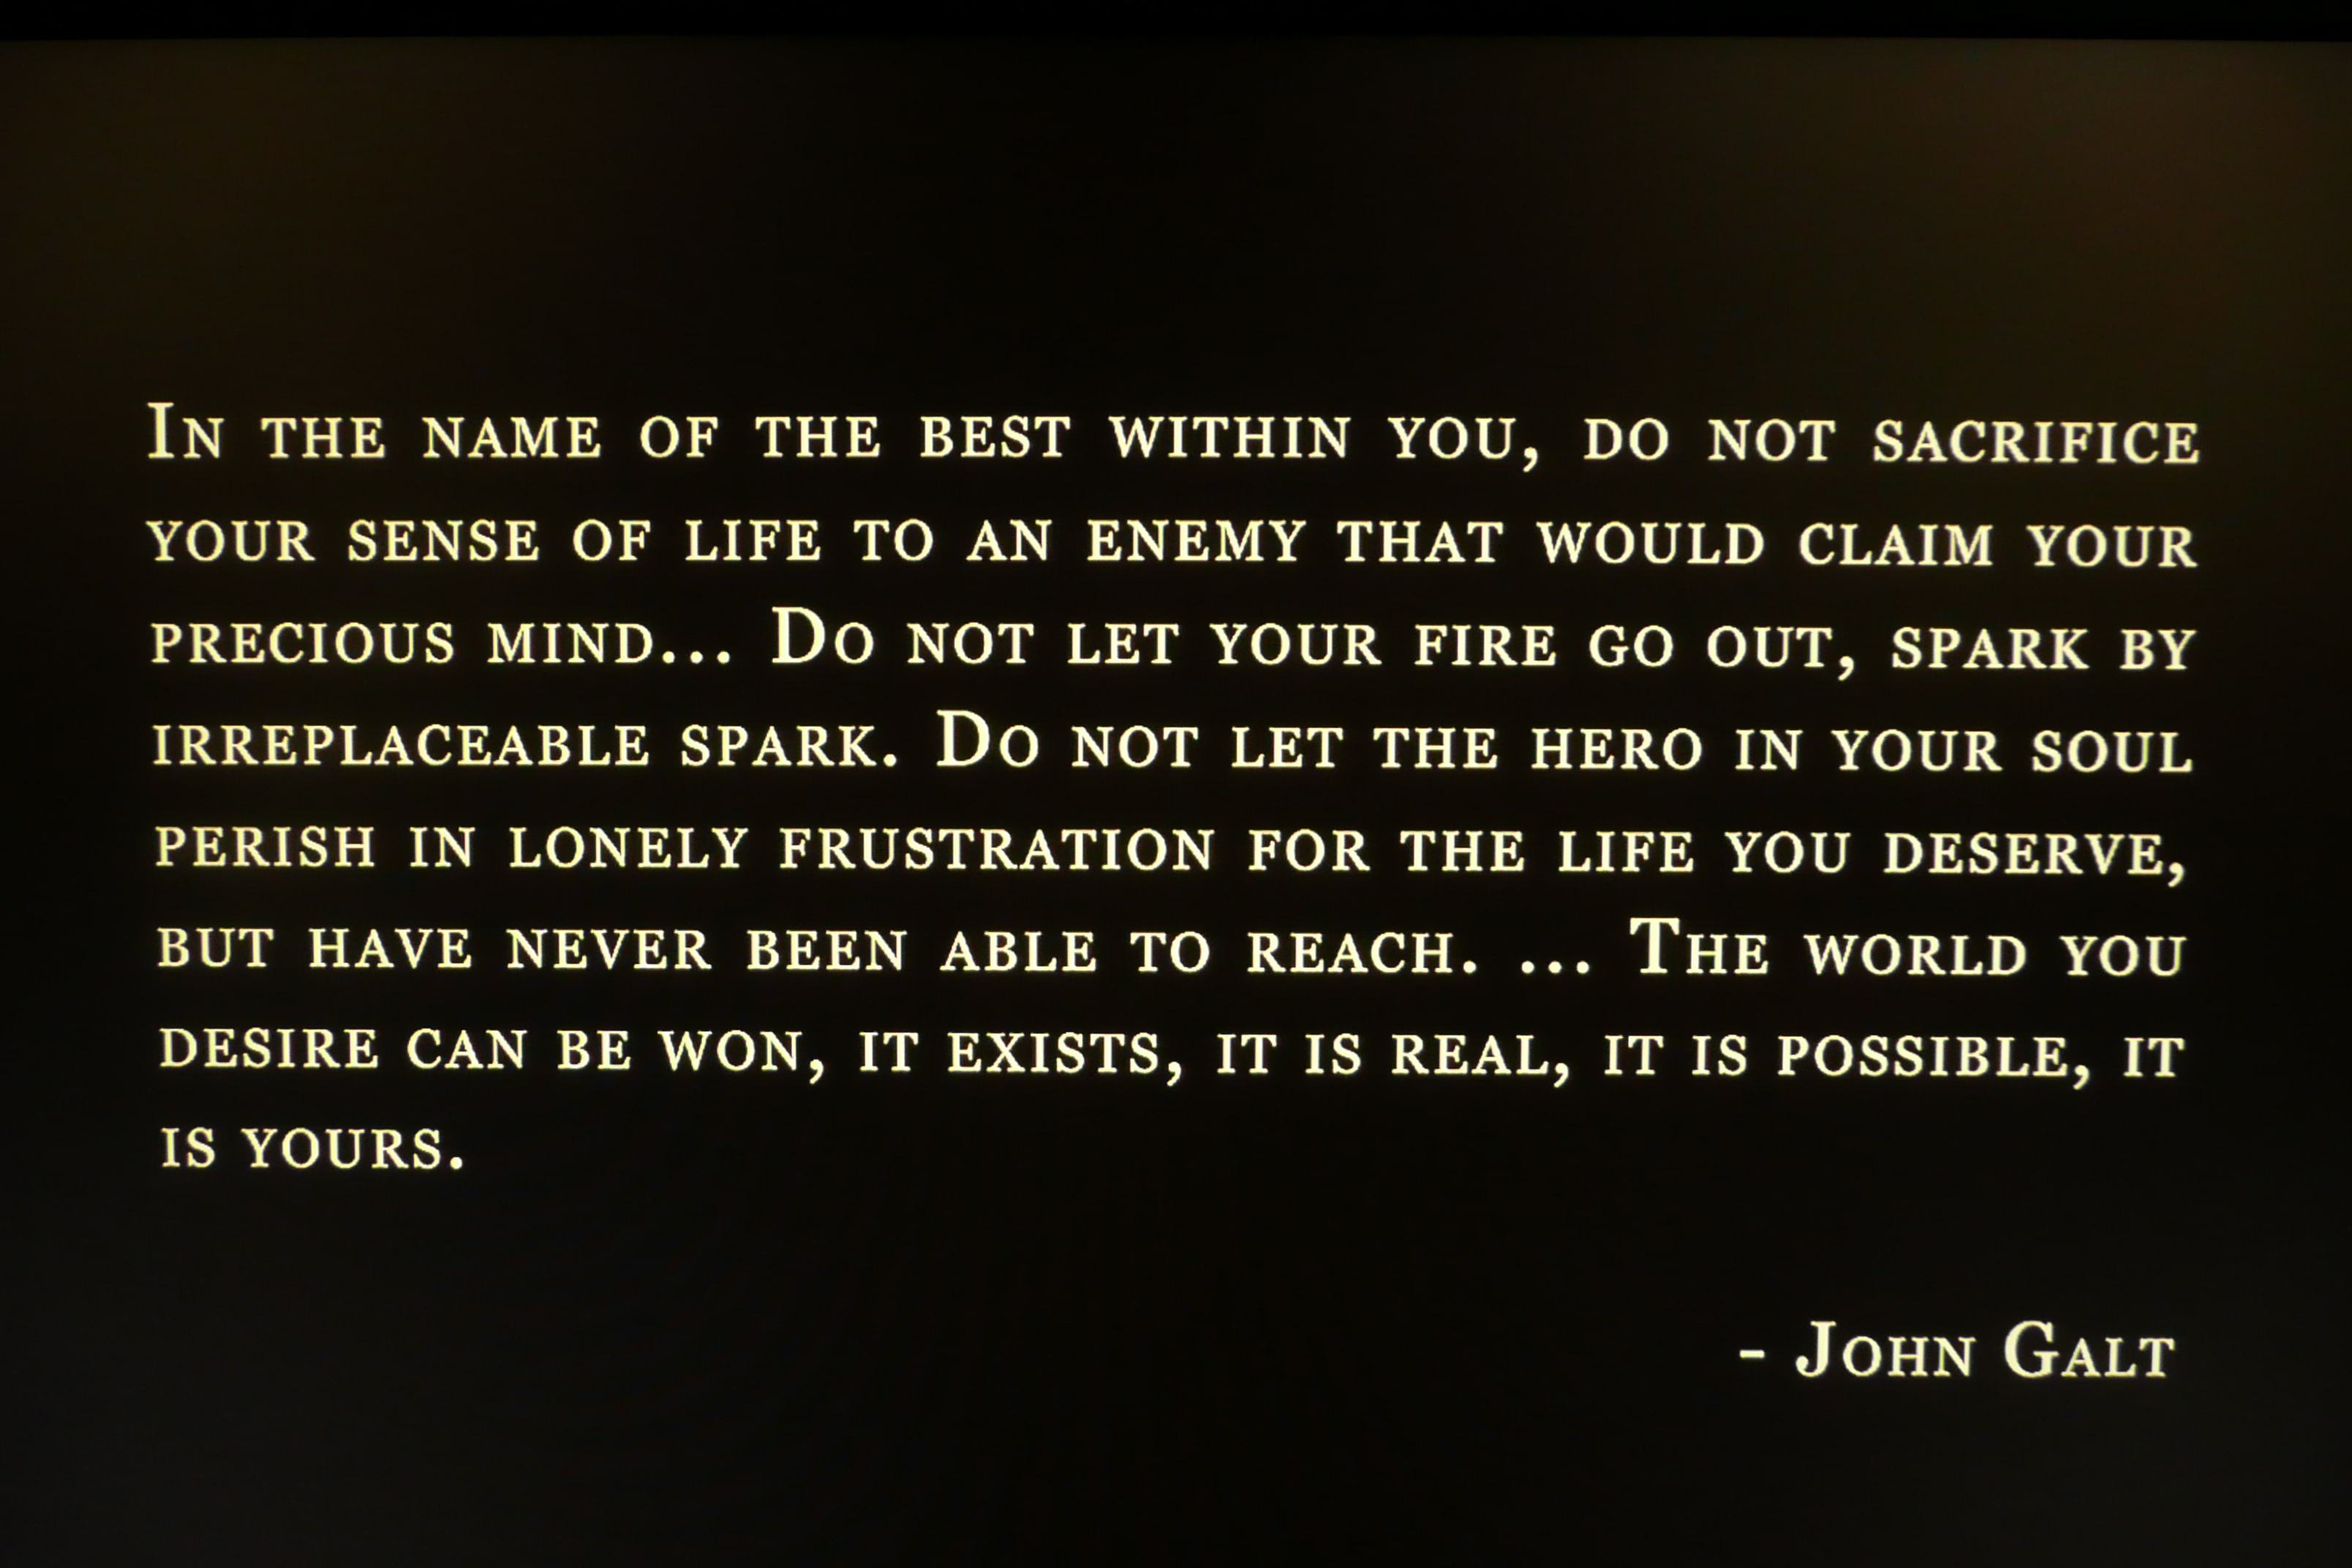 John Galt's Message